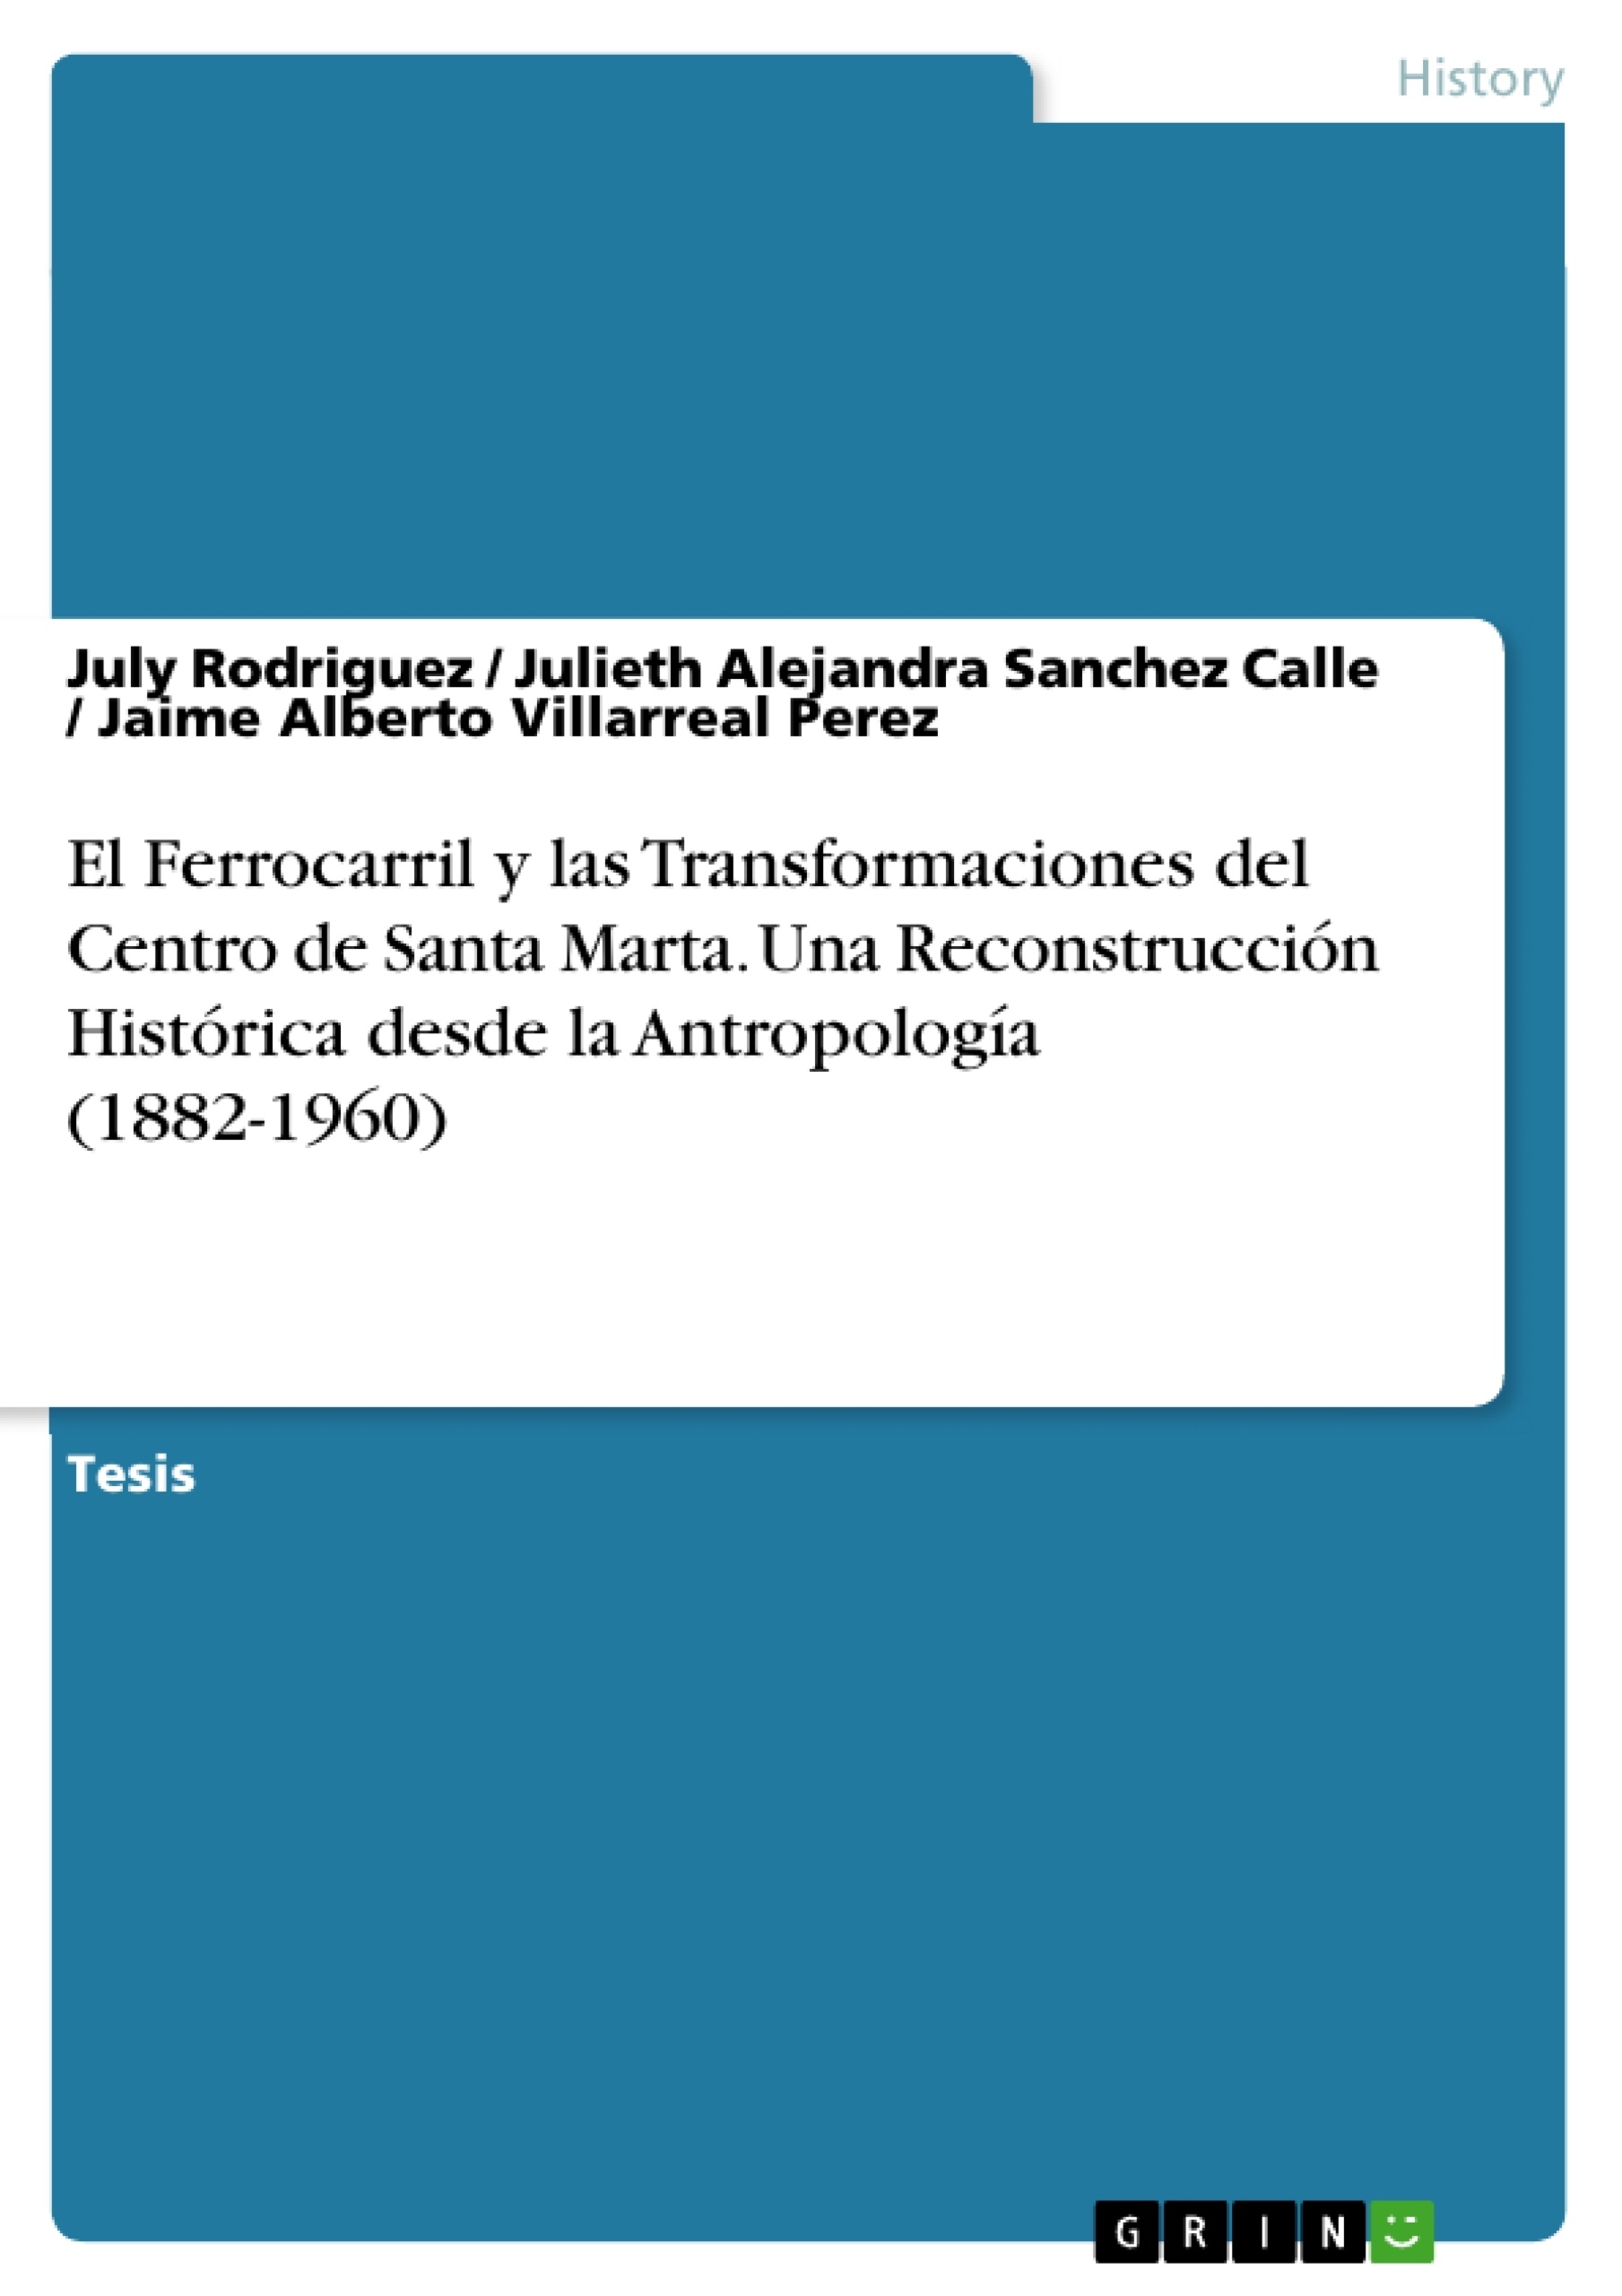 Título: El Ferrocarril y las Transformaciones del Centro de Santa Marta. Una Reconstrucción Histórica desde la Antropología (1882-1960)